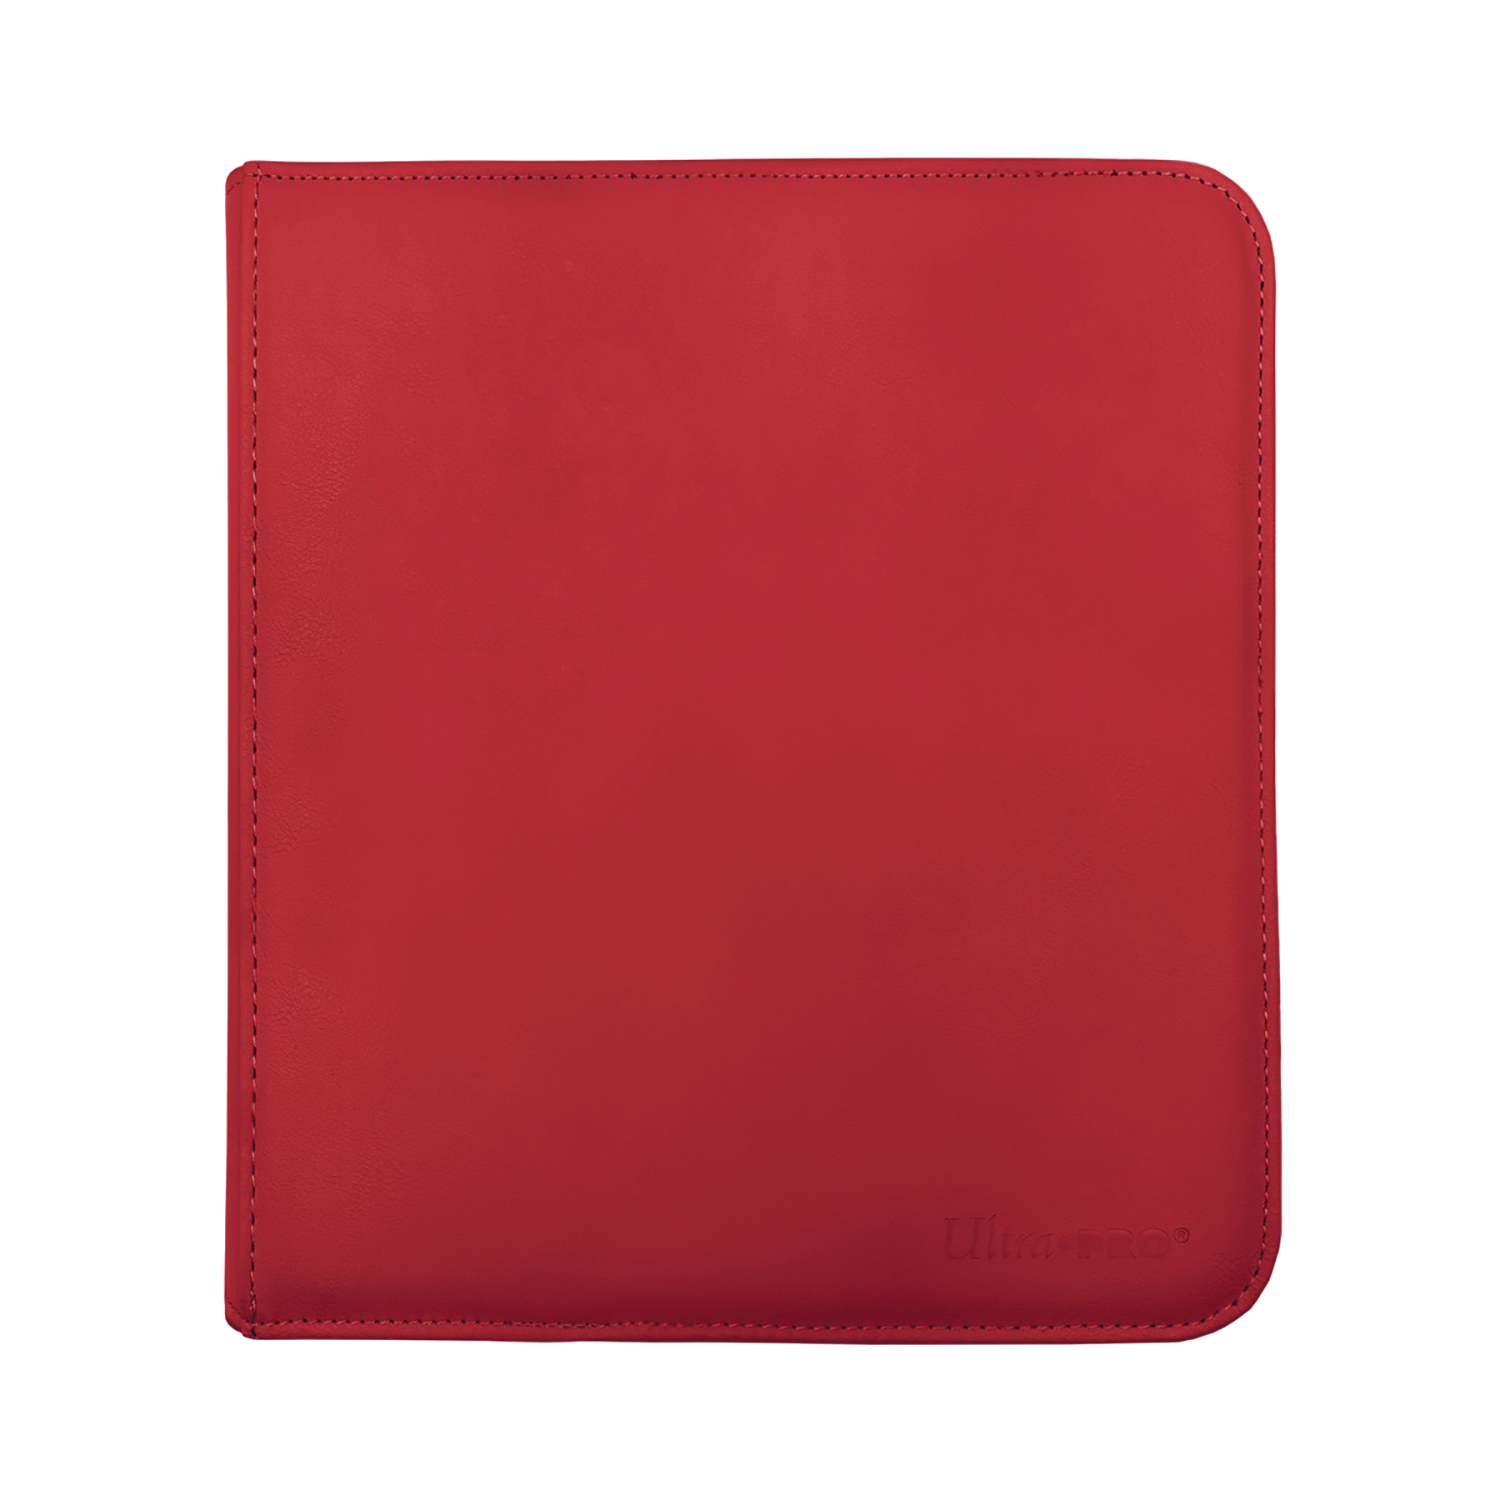 12 Pocket Zippered Pro Binder Red